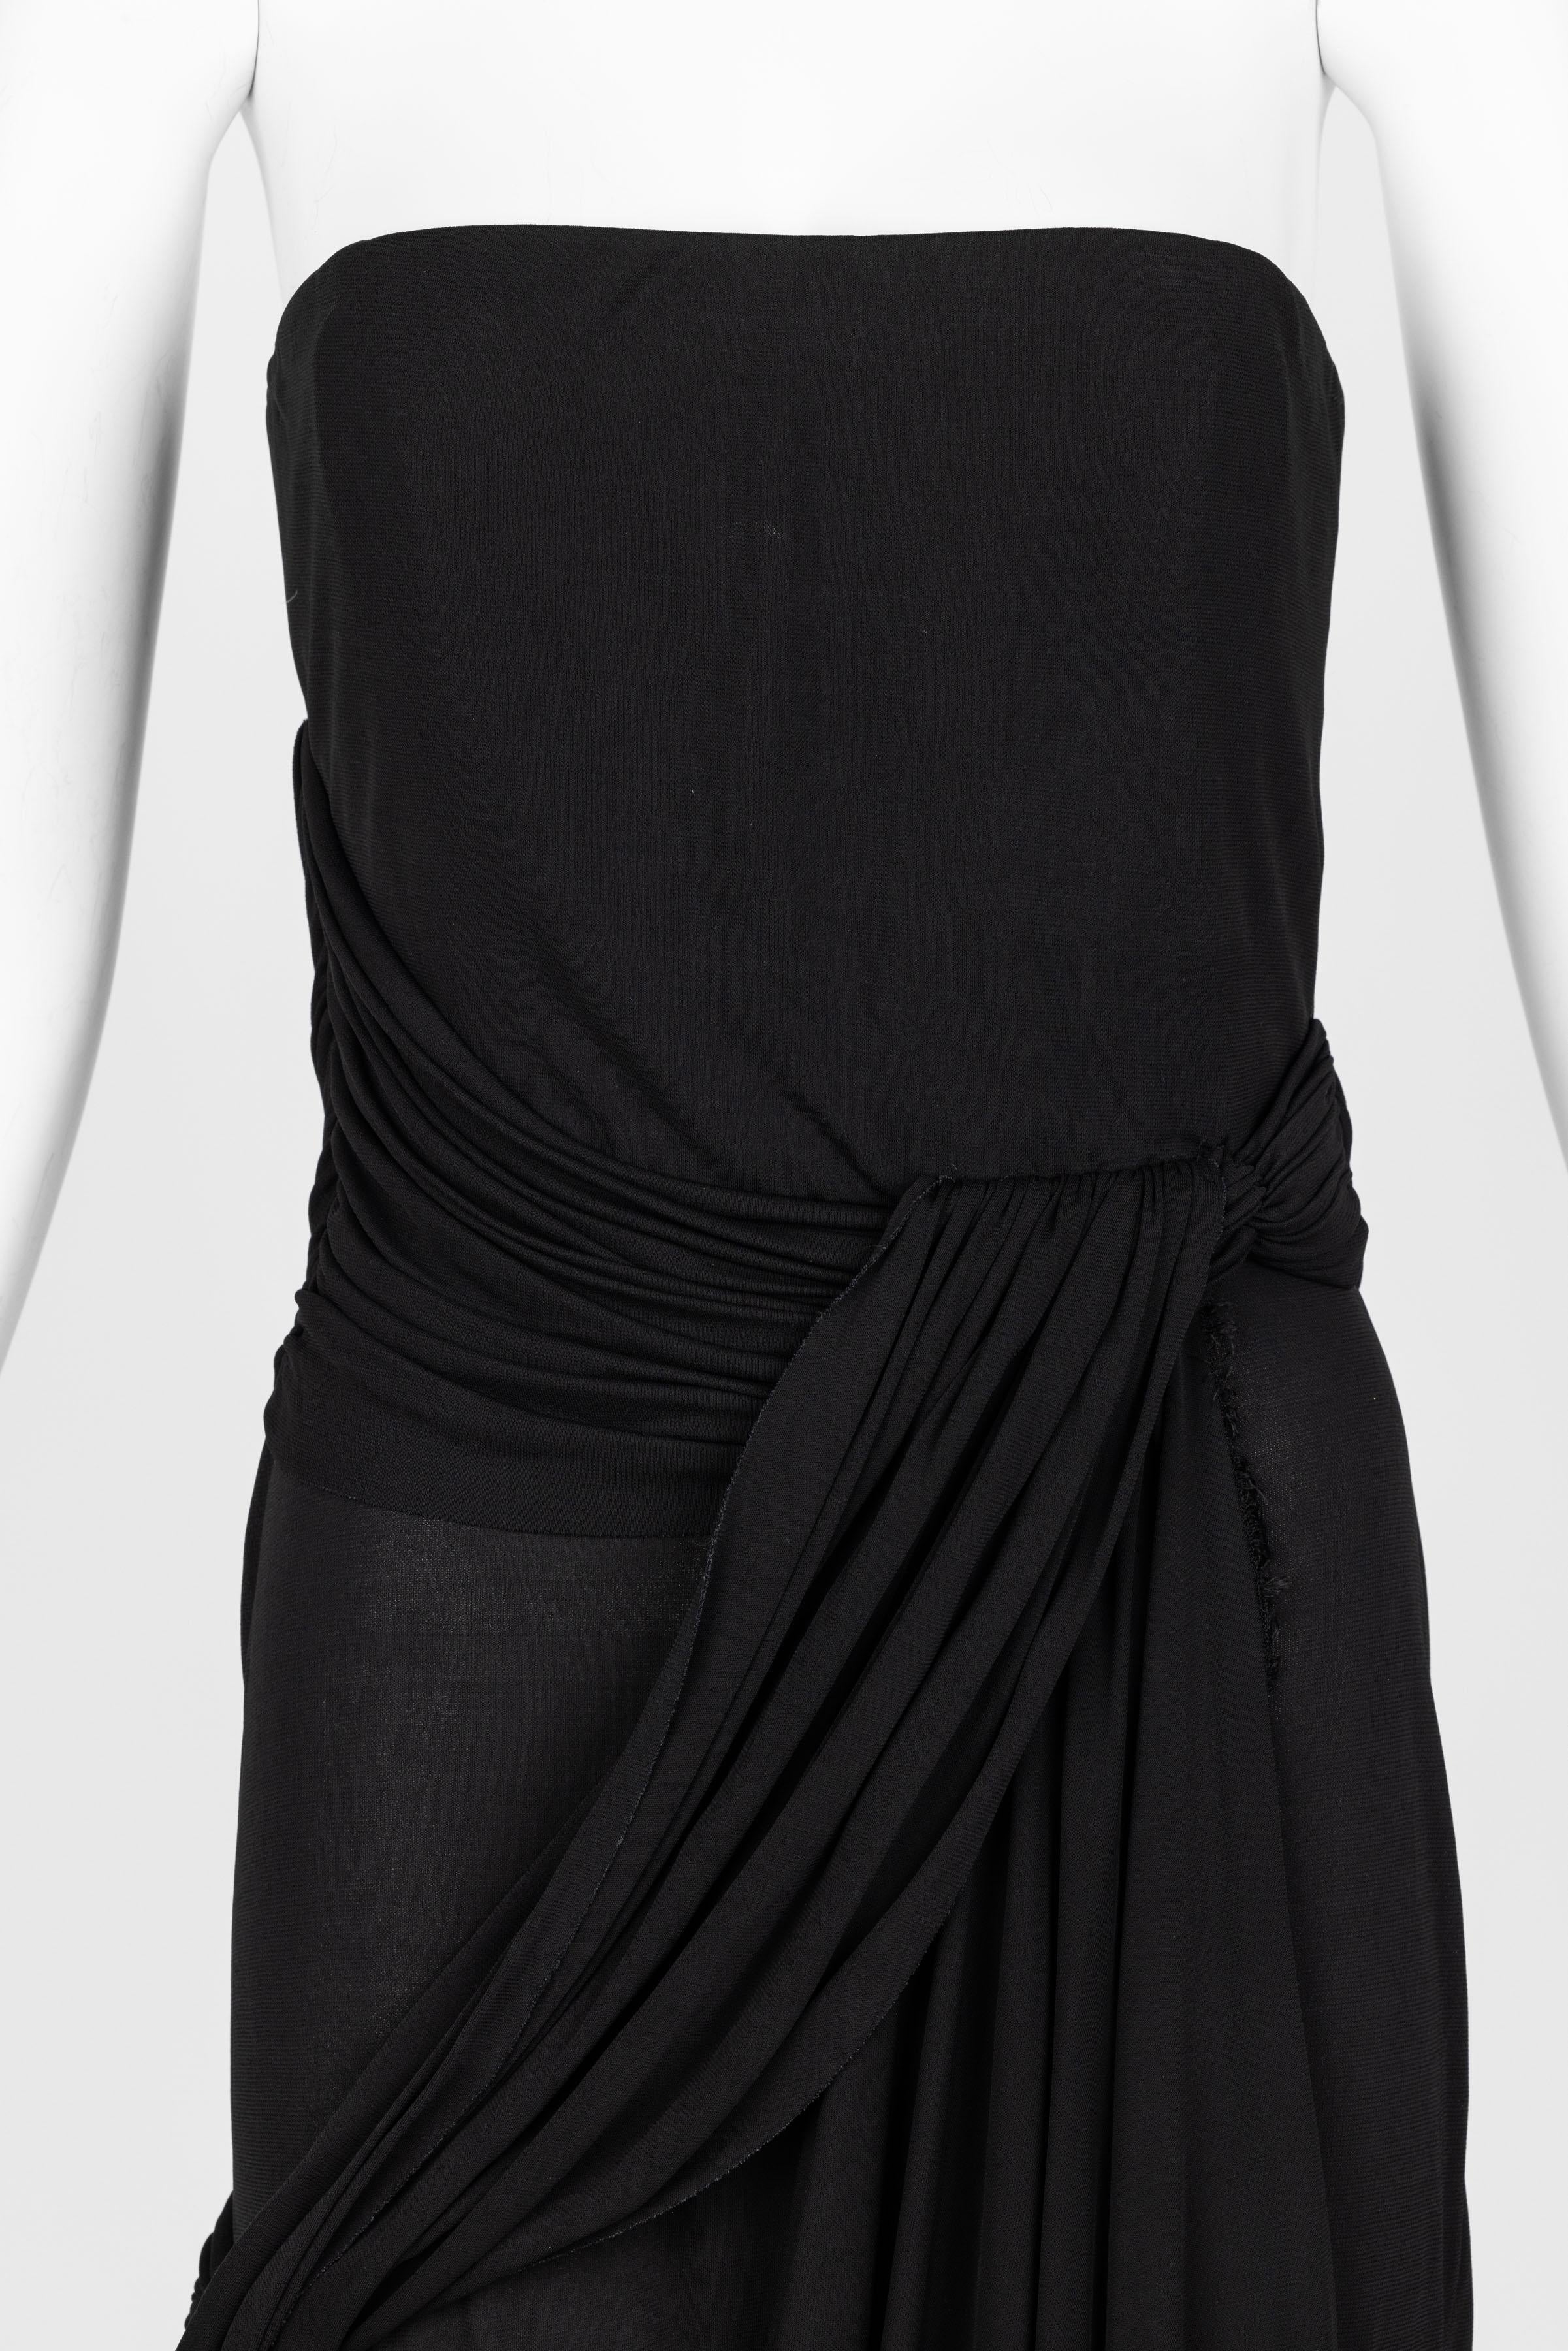 Bill Blass 1970s Black Strapless Draped Maxi Dress For Sale 3